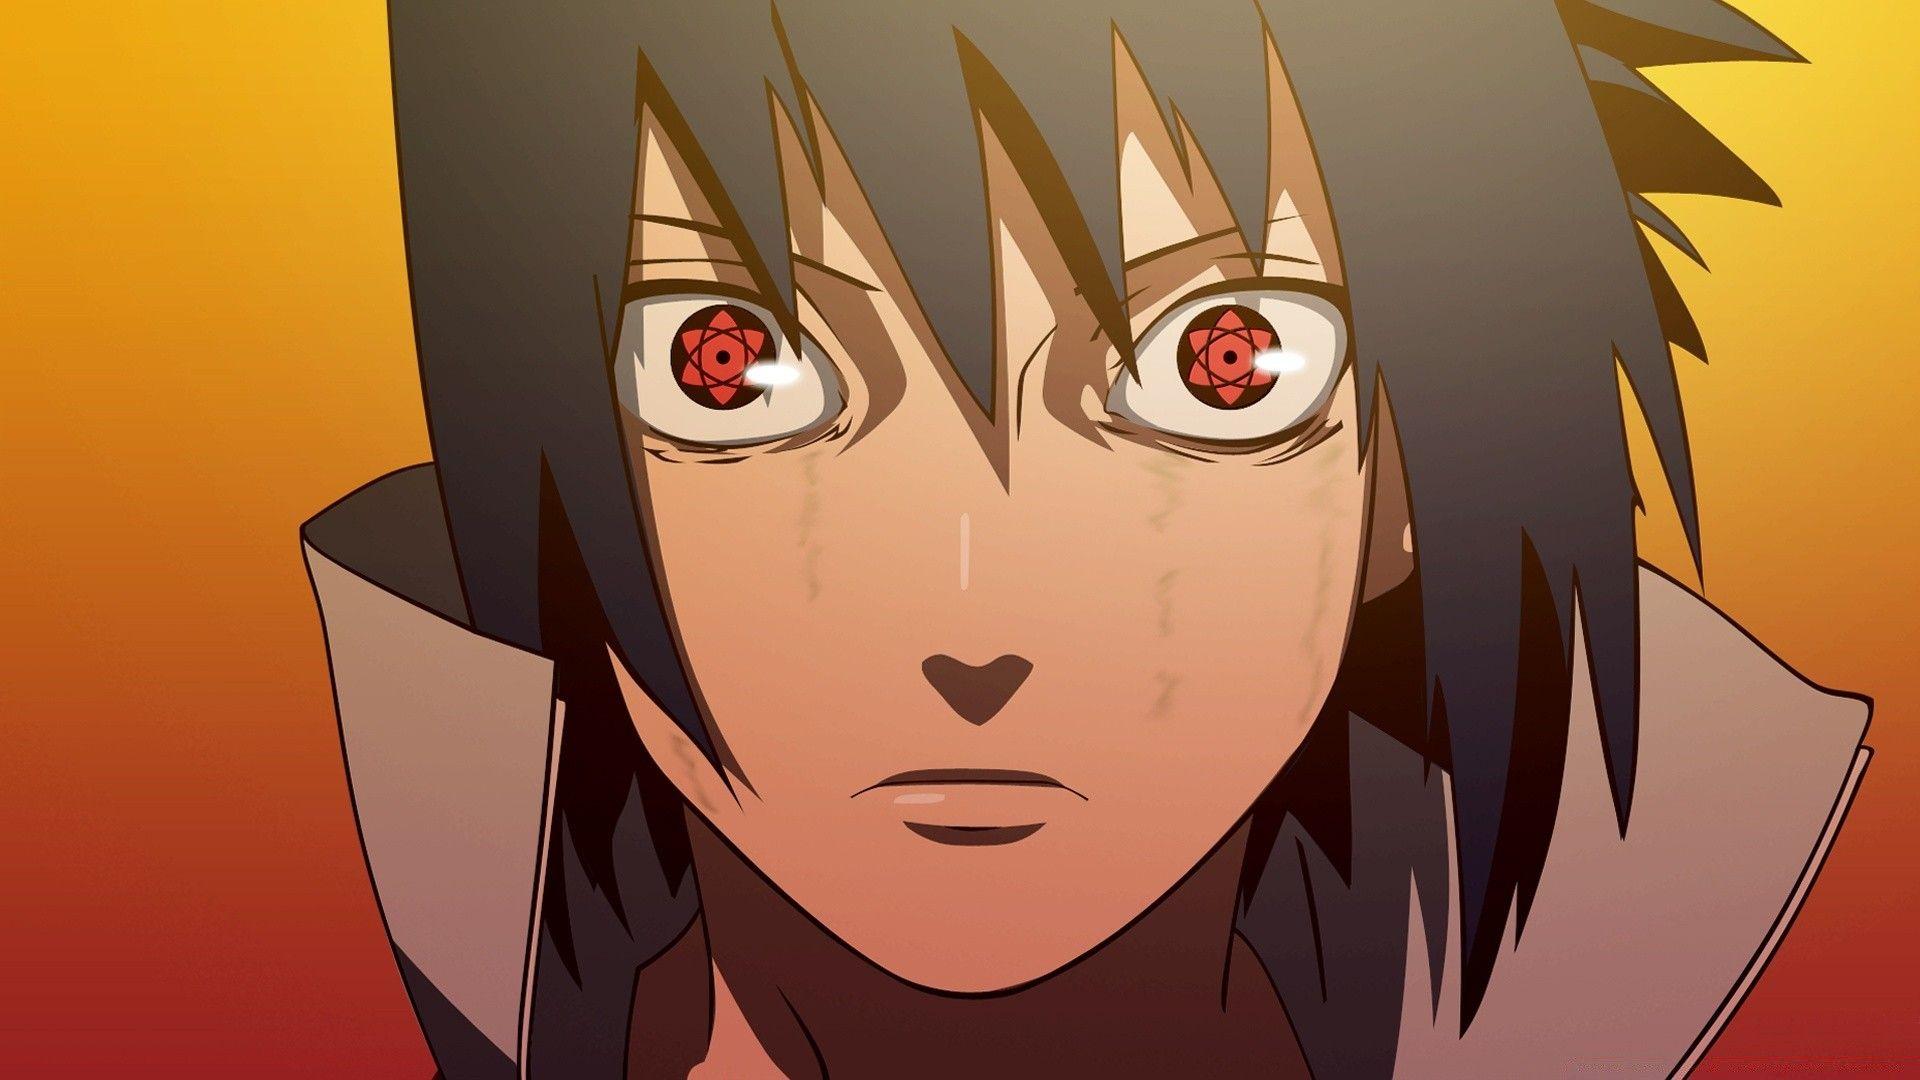 Bạn là một fan của series Naruto nhưng chưa từng nhìn thấy Sasuke khóc sao? Tại sao không thử xem bức ảnh cảm động này để thấy được tầm quan trọng của giá trị tình bạn và sự hy sinh trong cuộc sống của anh chàng Uchiha. Đó sẽ là một trải nghiệm mới mẻ và thú vị đấy!